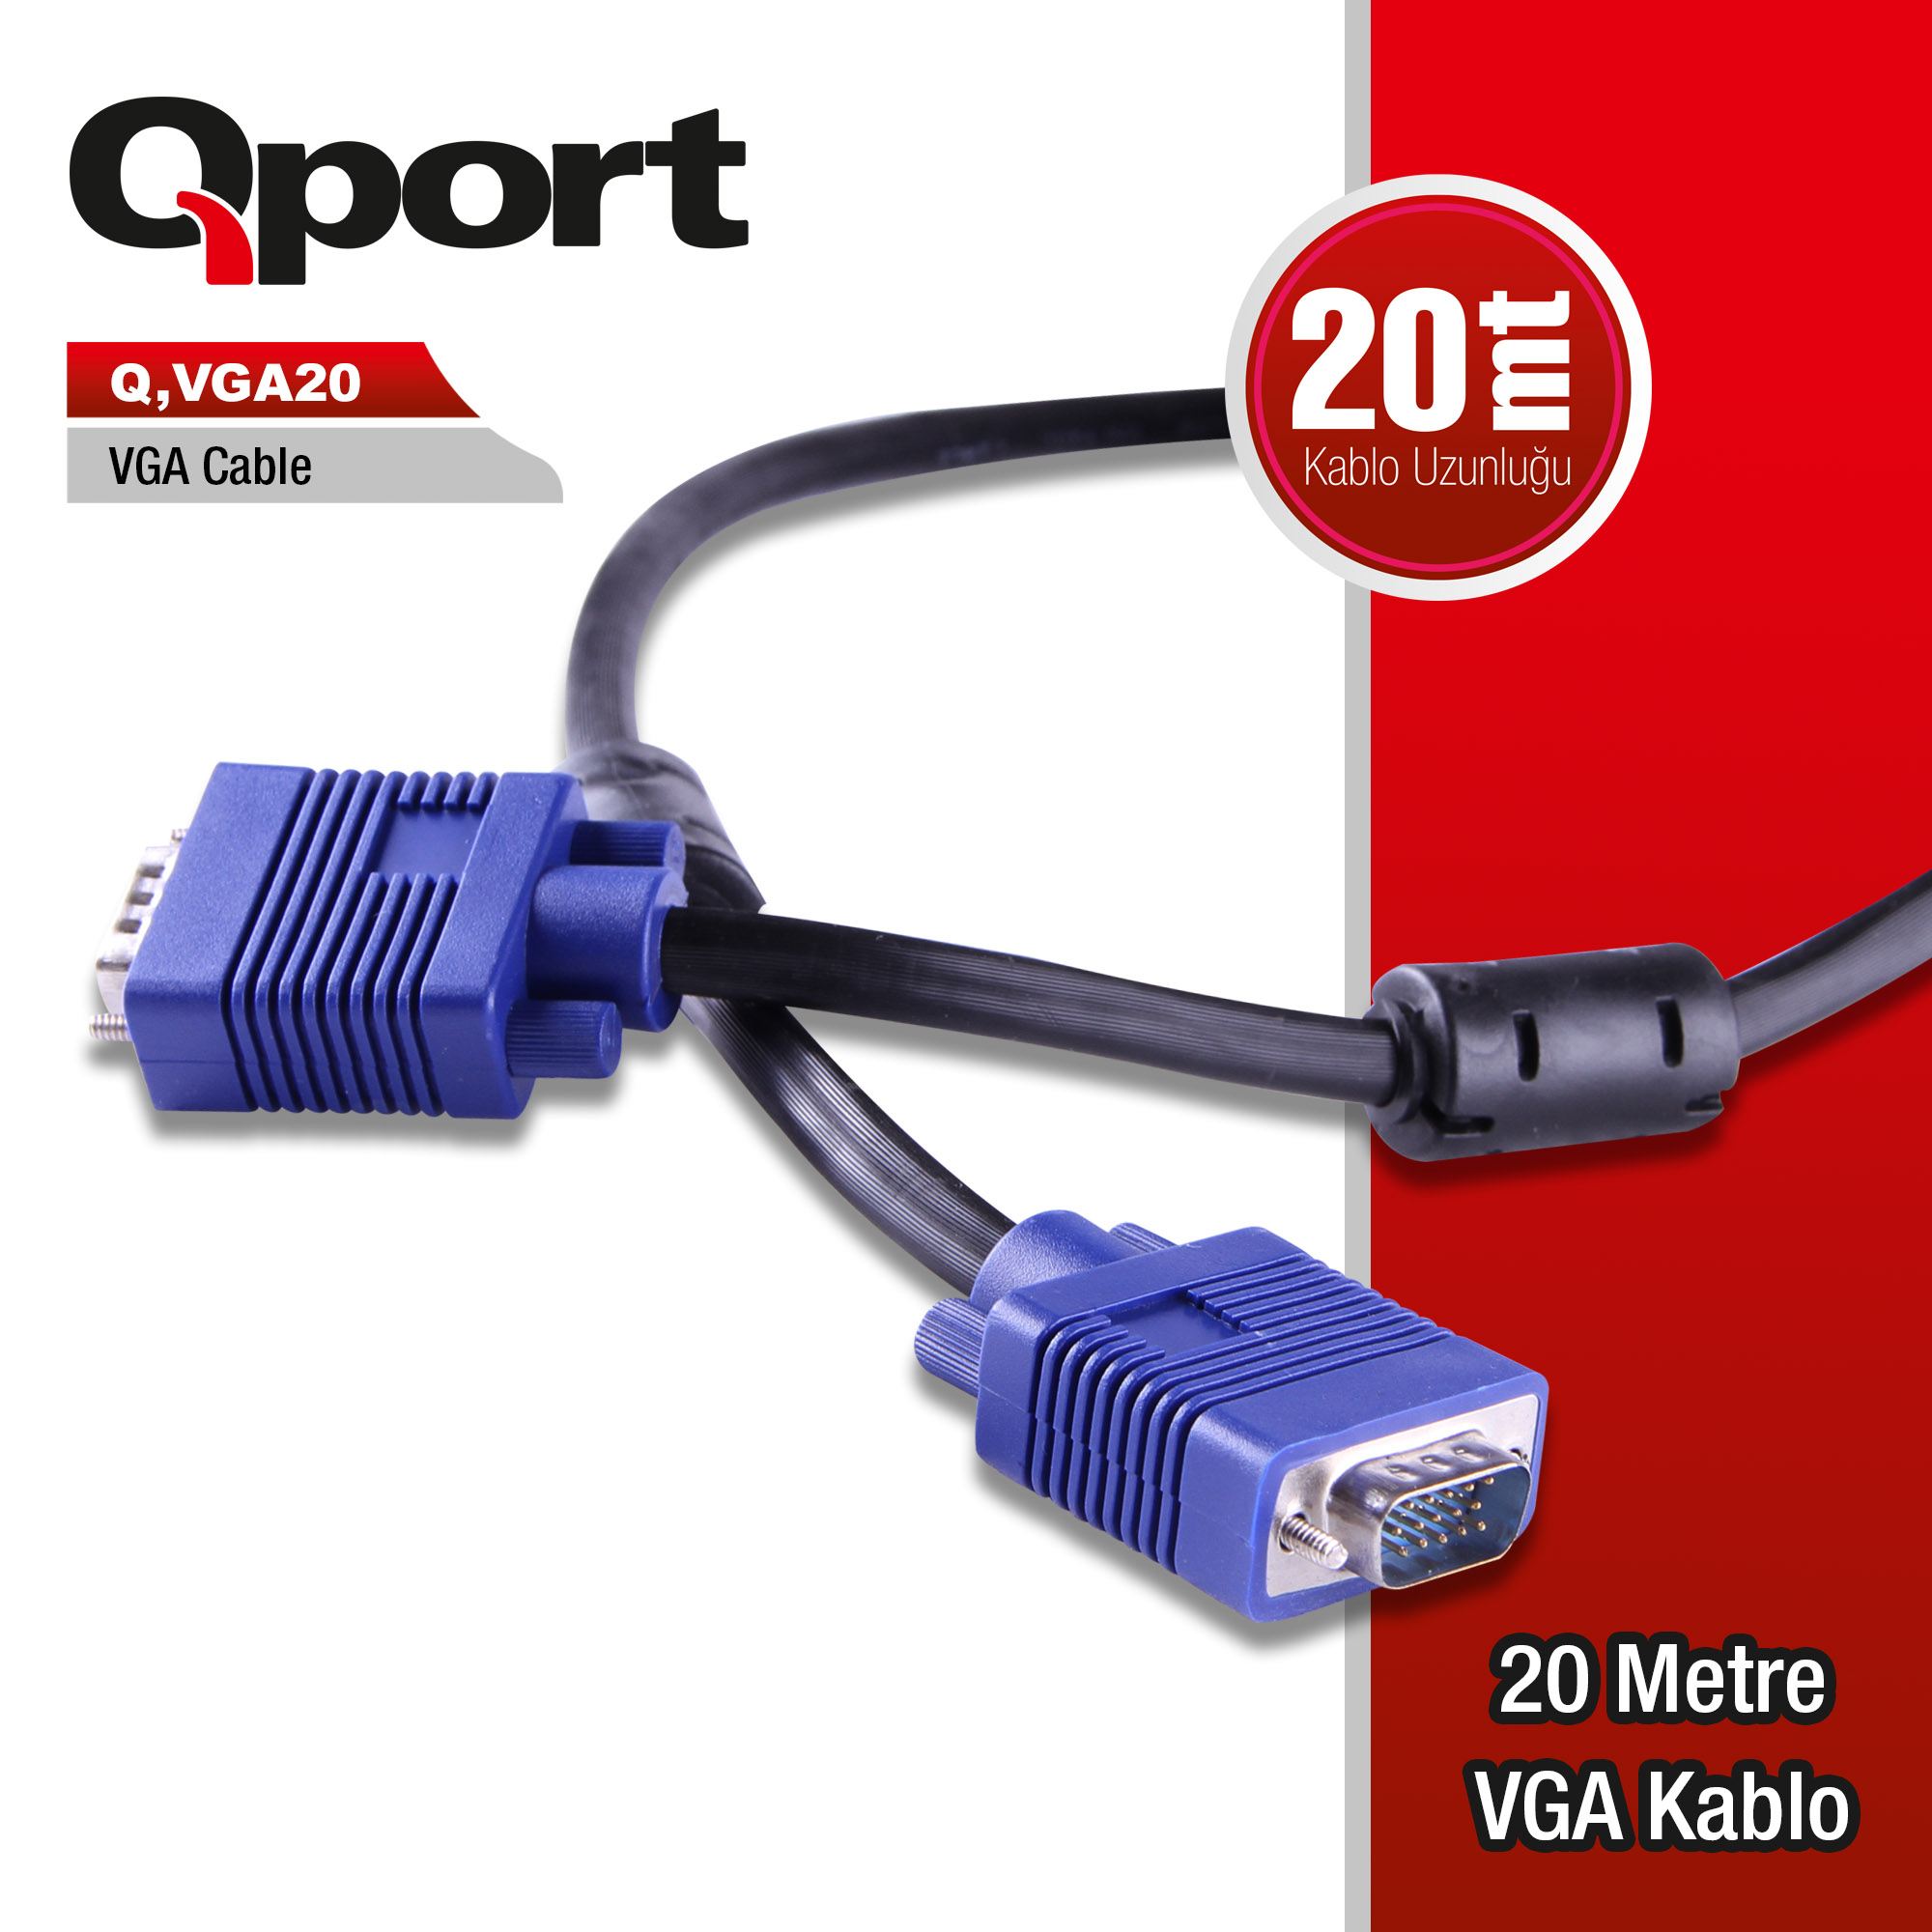 QPORT Q-VGA20 20MT VGA KABLO